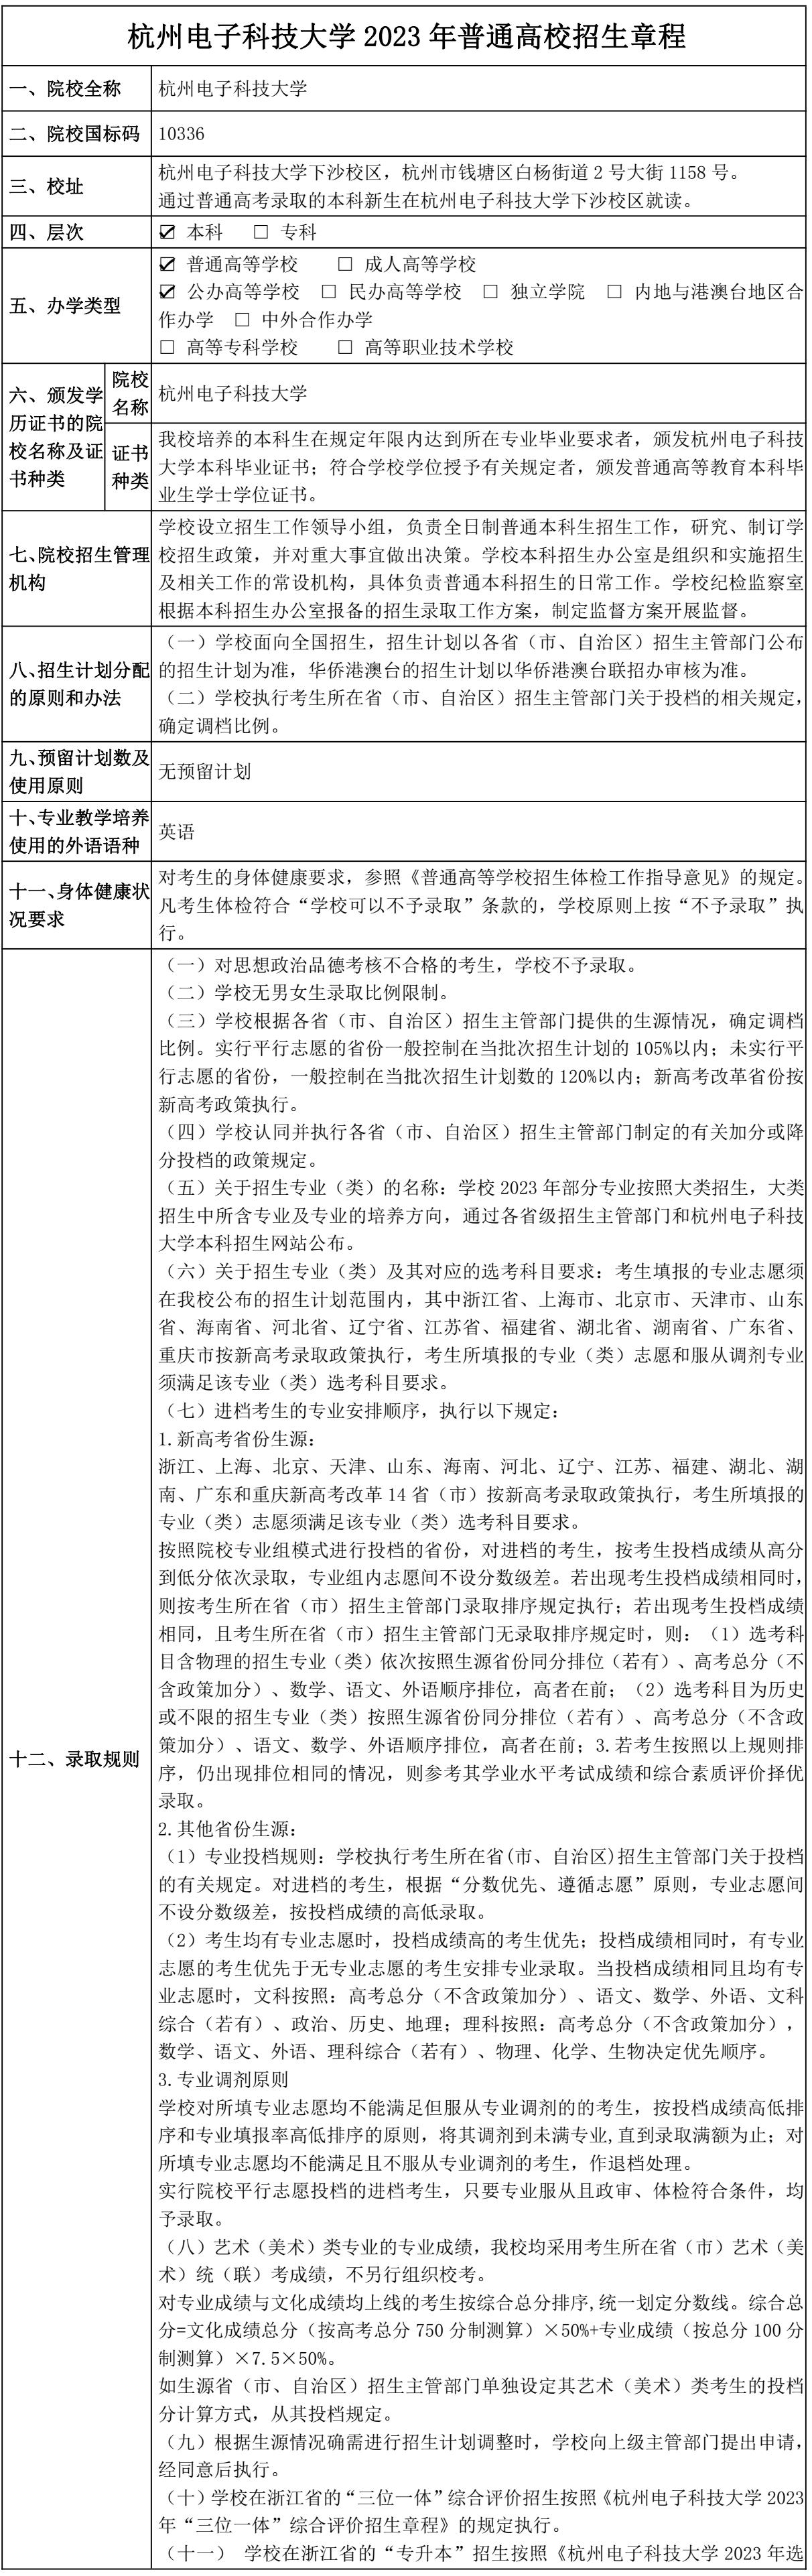 杭州电子科技大学2023年普通高校招生章程